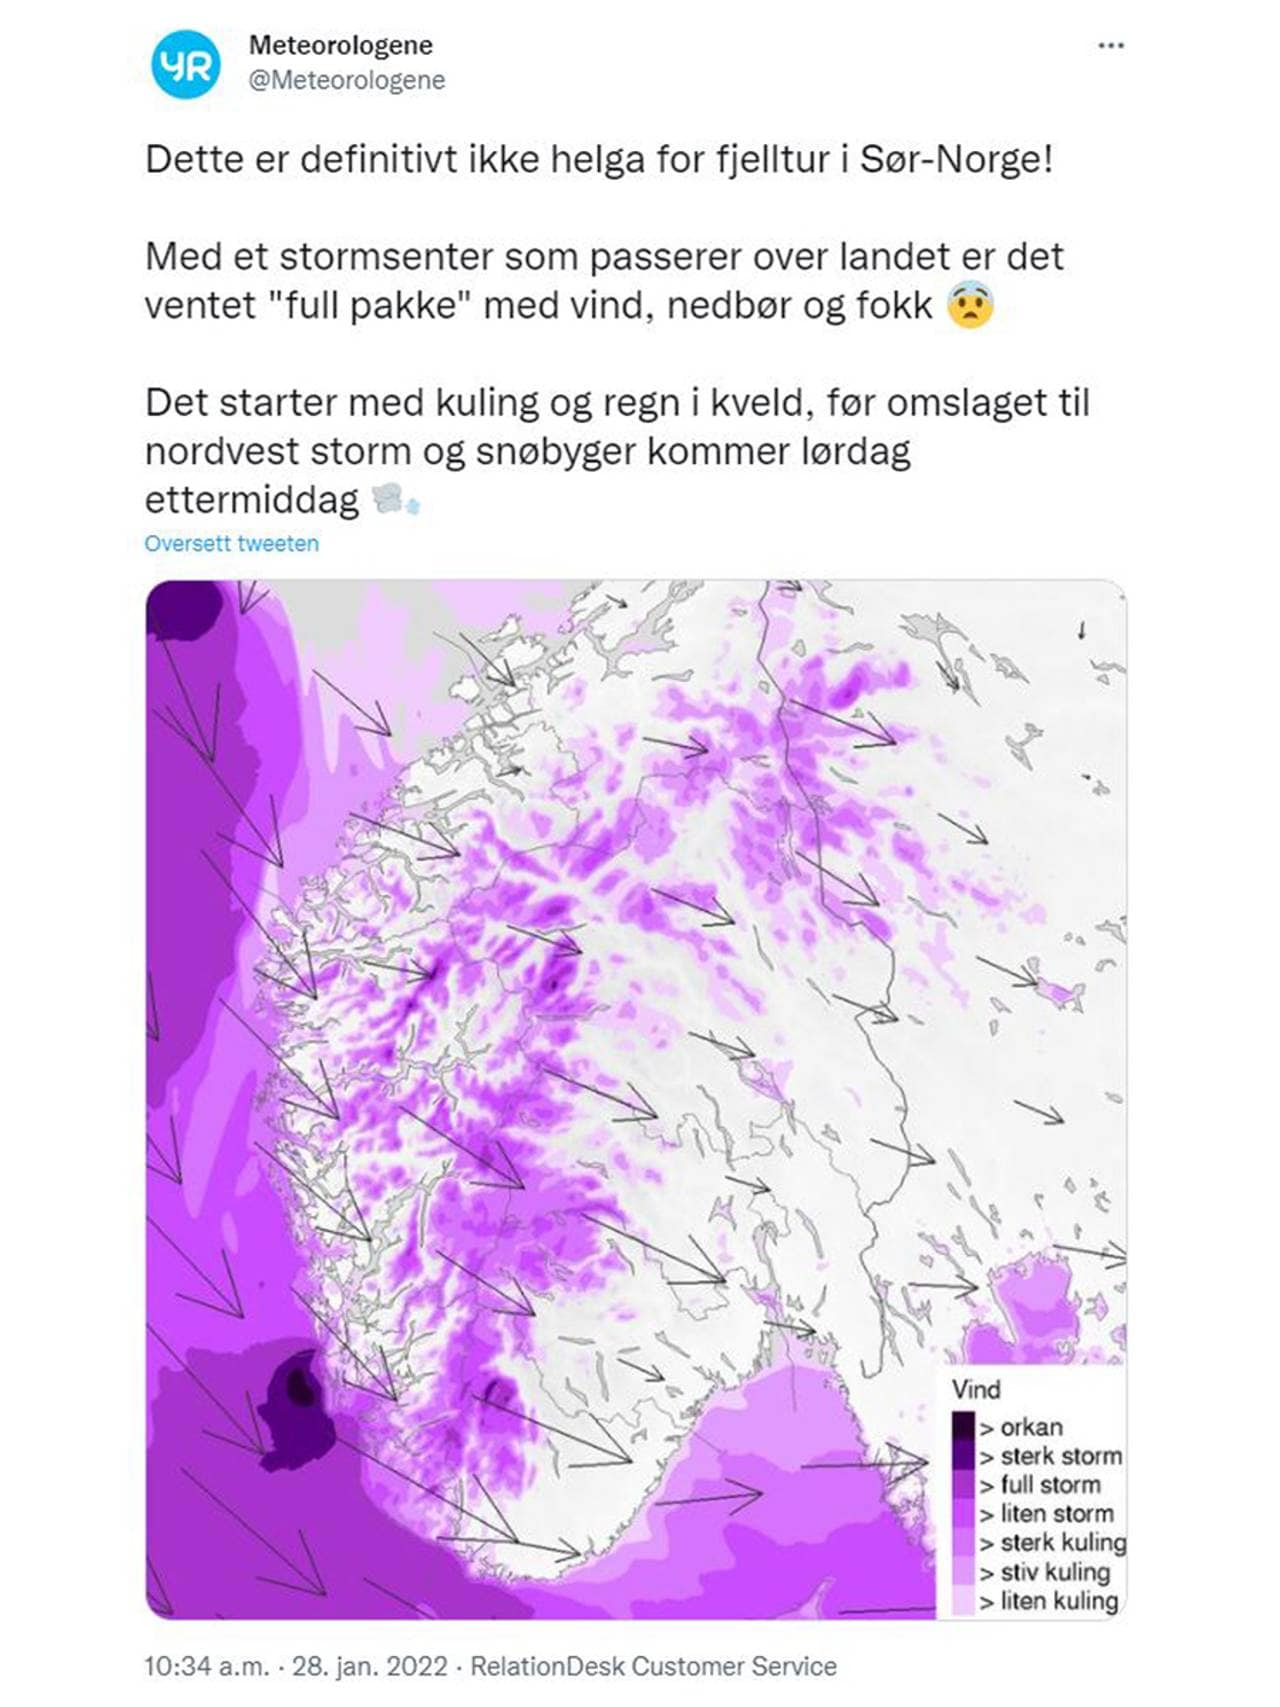 Skjermdump av yr - uvær over Sør-Norge